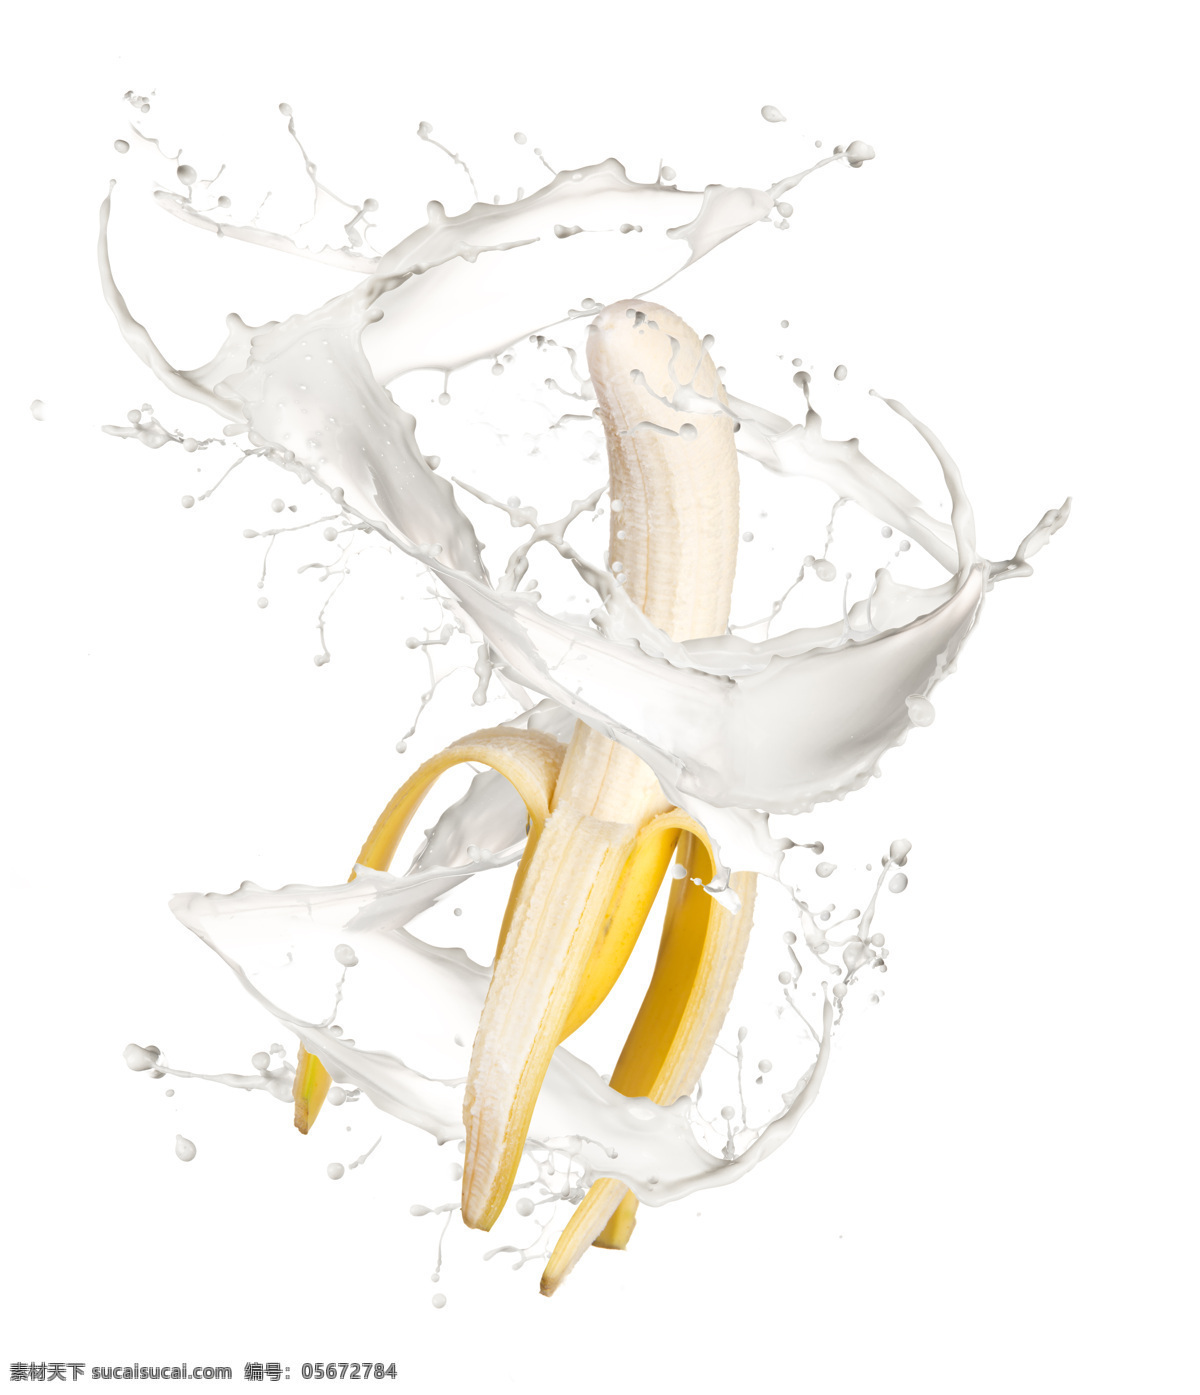 香蕉 动感 牛奶 食物 水果 新鲜 剥开的香蕉 动感牛奶 奶汁 涟漪 蔬菜图片 餐饮美食